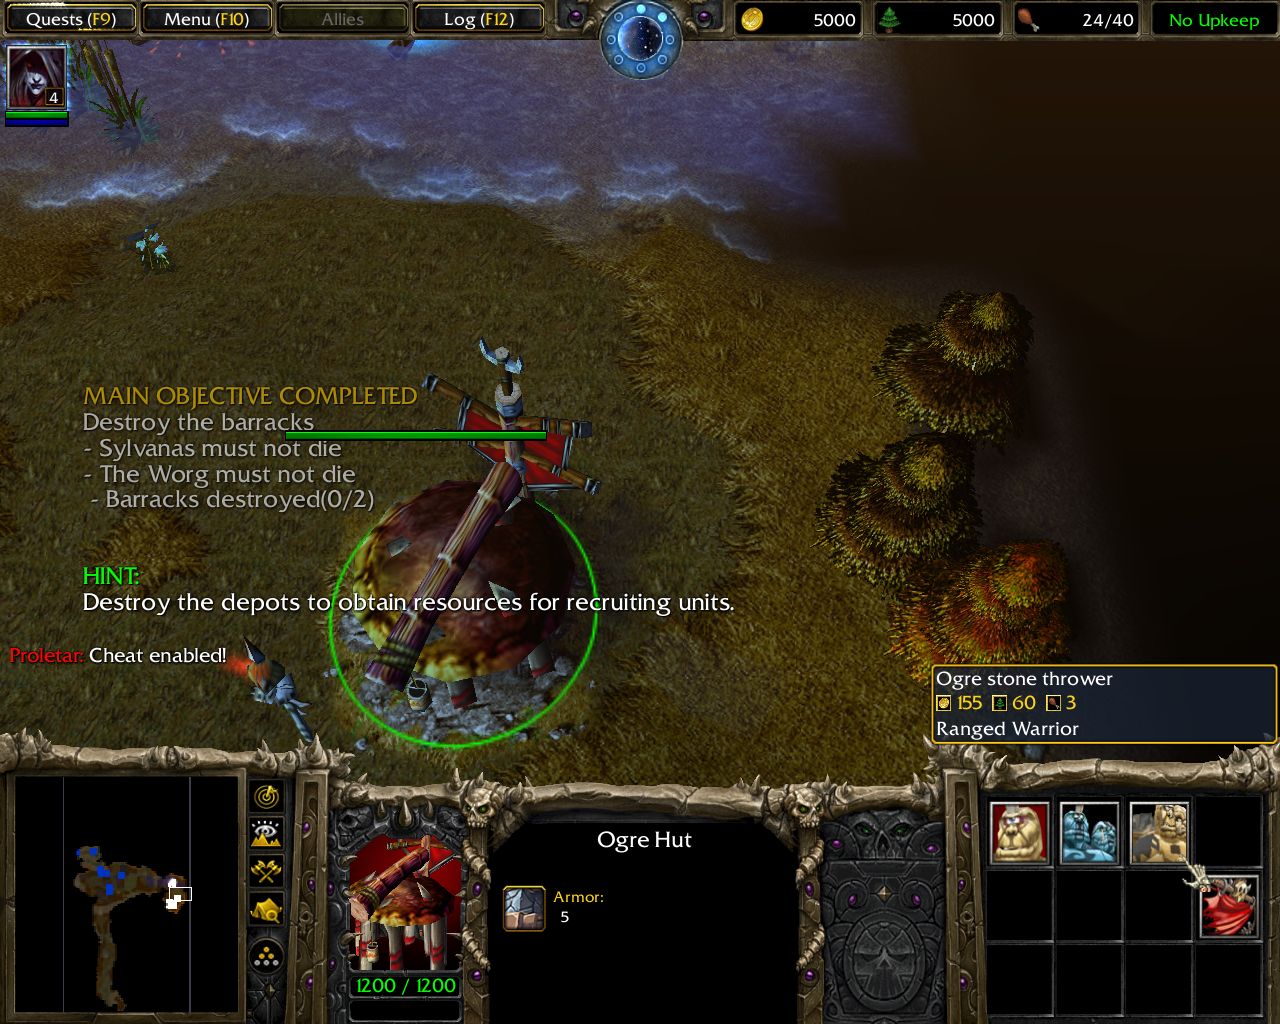 Ogre Stone Thrower V2 Icon in-game Screenshot - 3.jpg